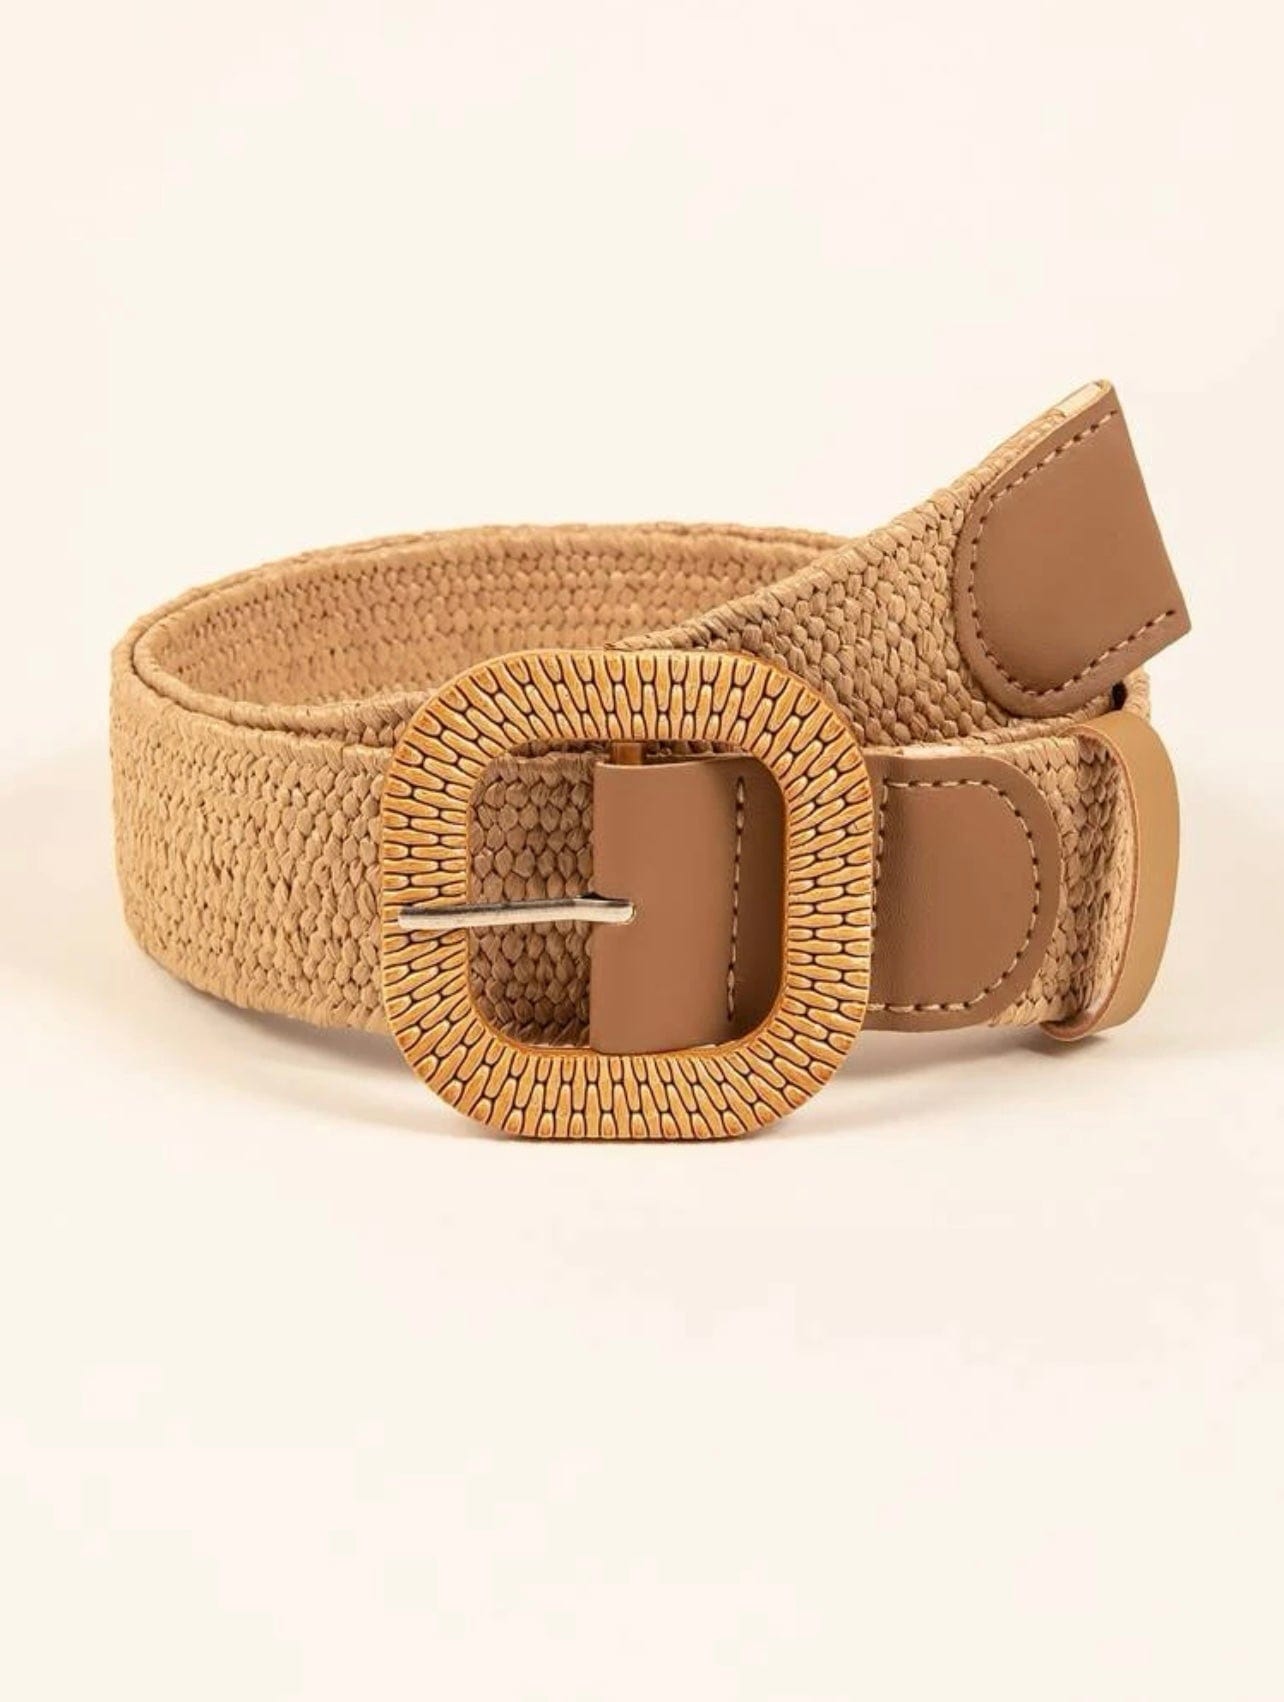 Buy Brown Belt for Women